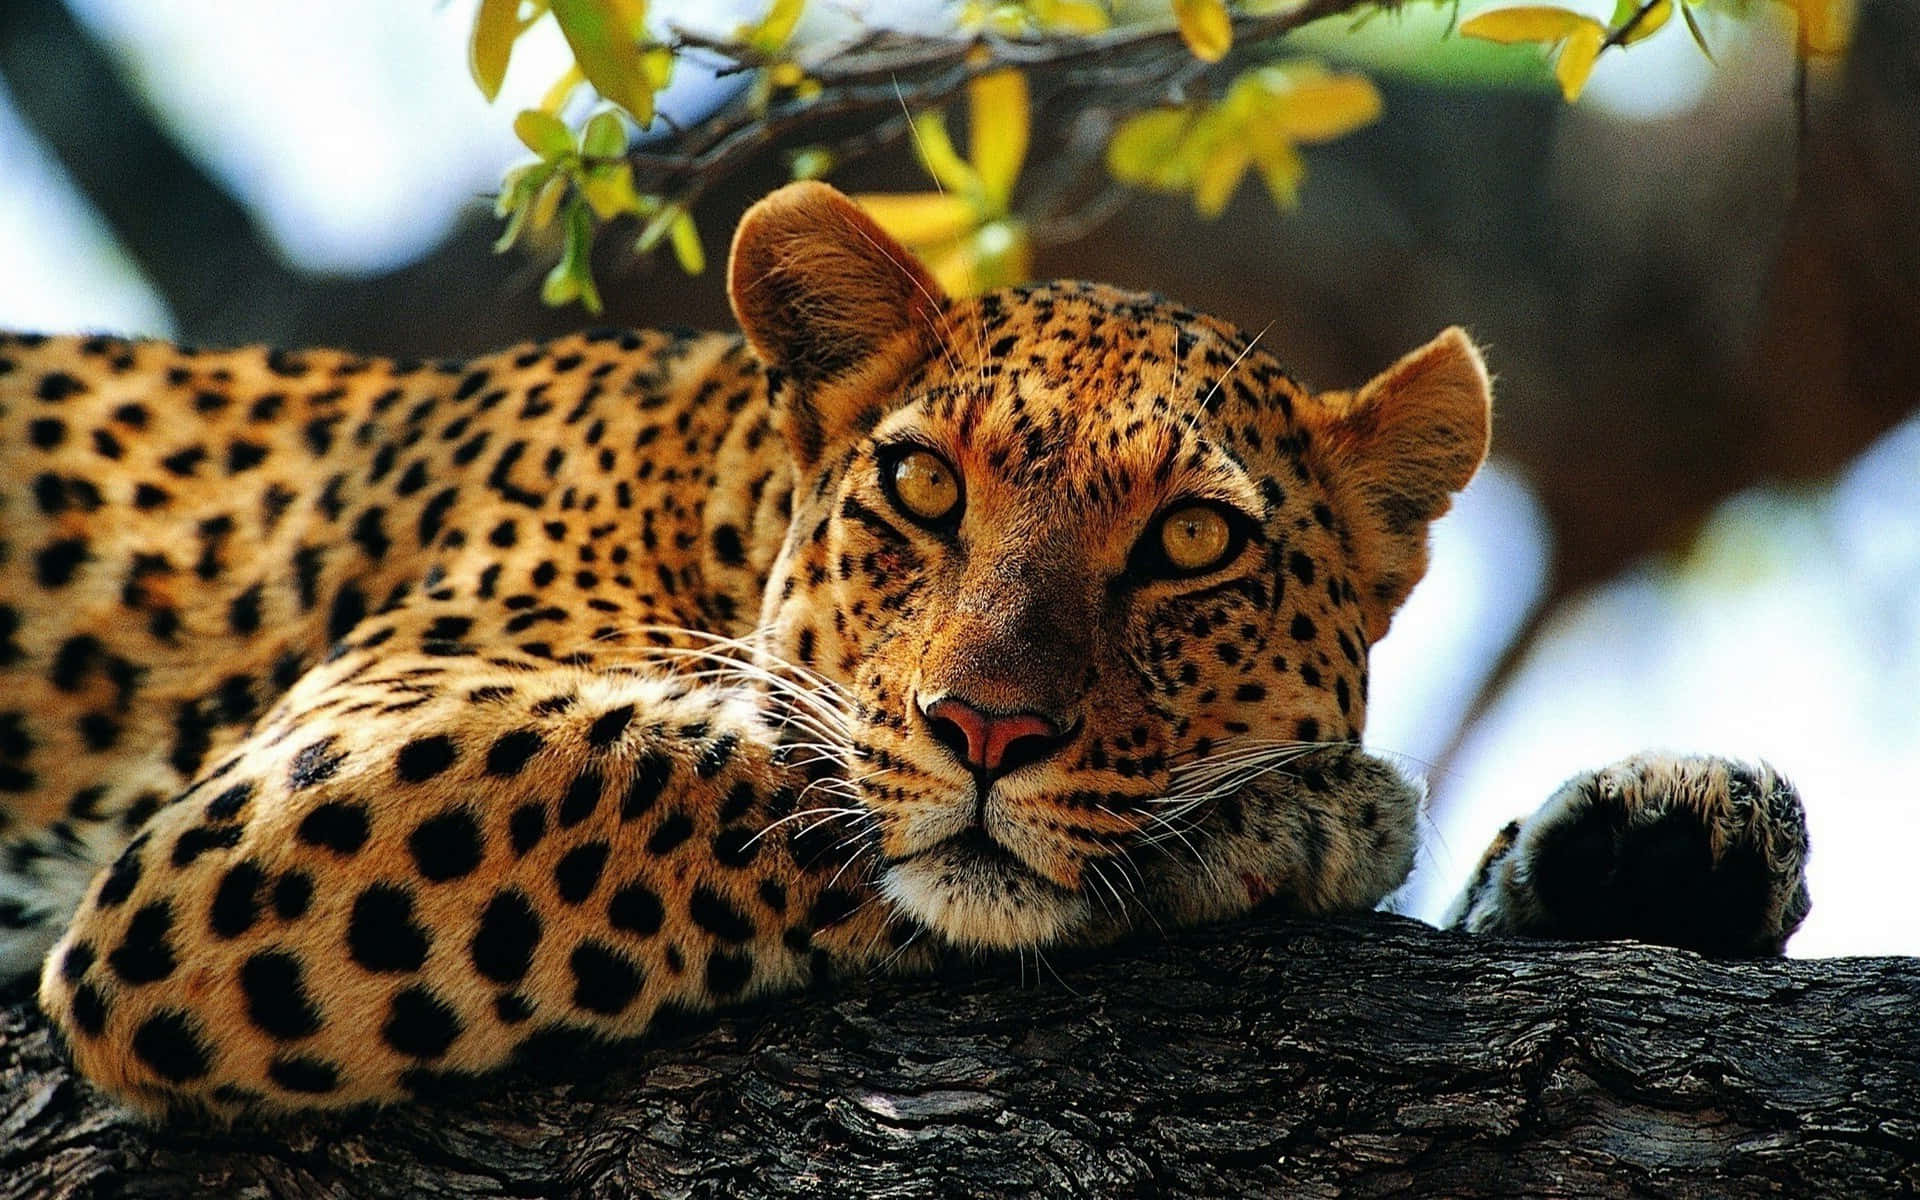 Imagende Un Leopardo De Animales Salvajes Con Ojos Amarillos.